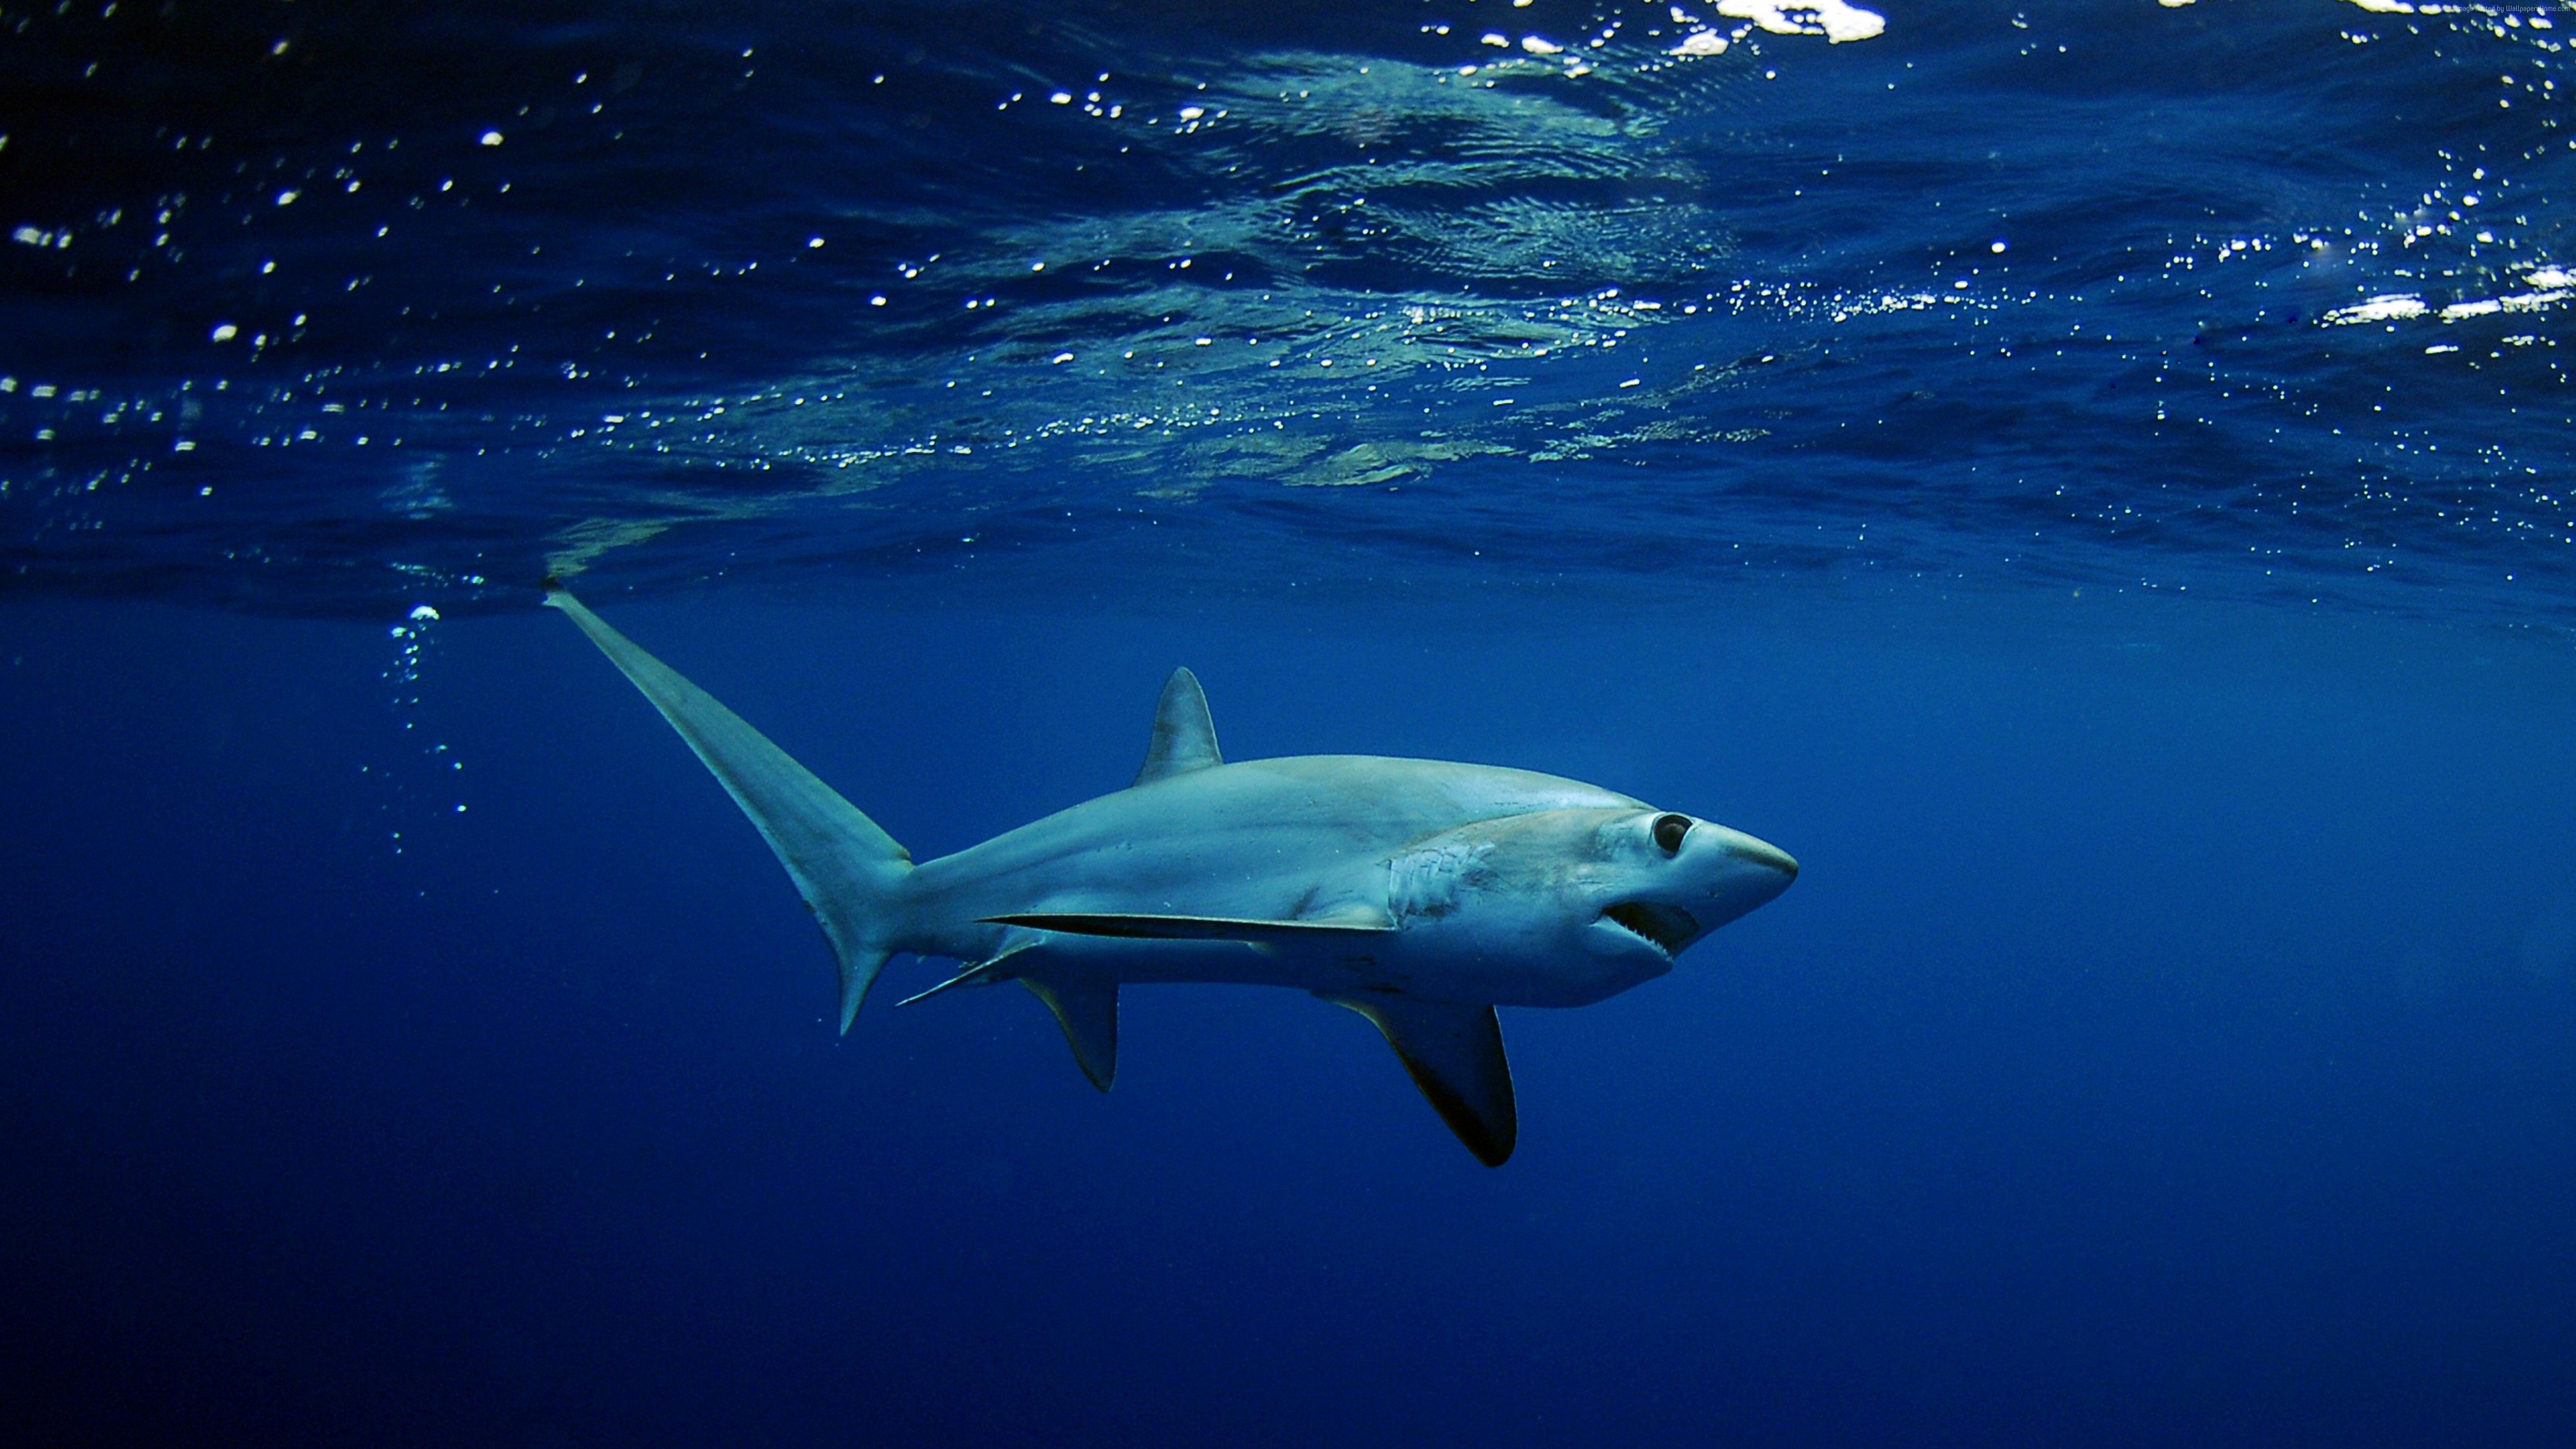 desktophdwallpaper.org. Thresher shark, Shark photo, Shark